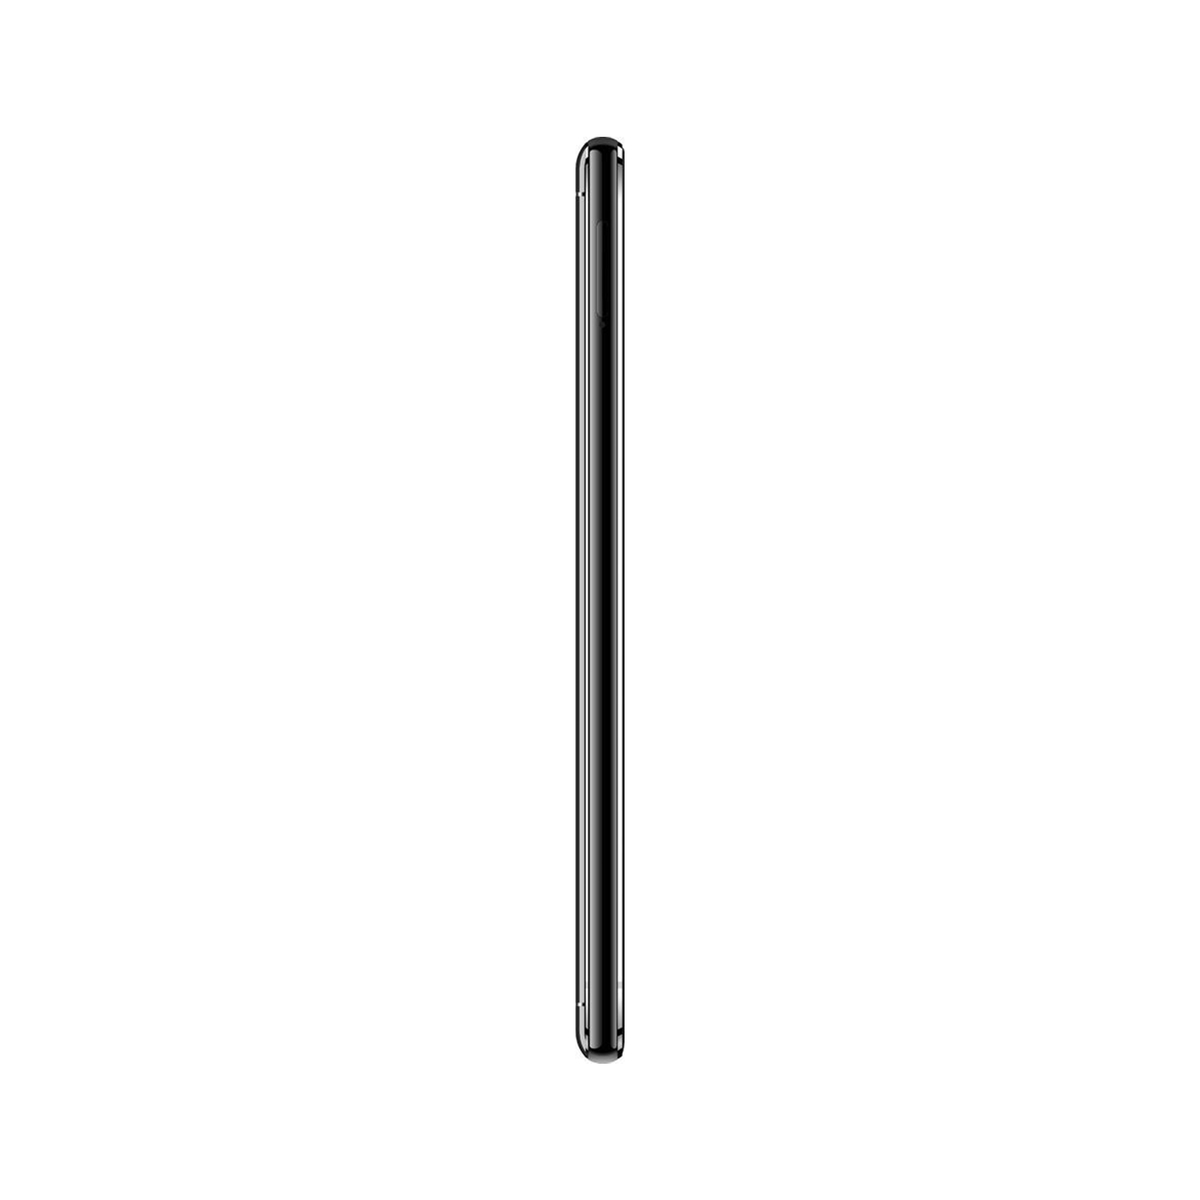 Lenovo K9 Note 32GB Black